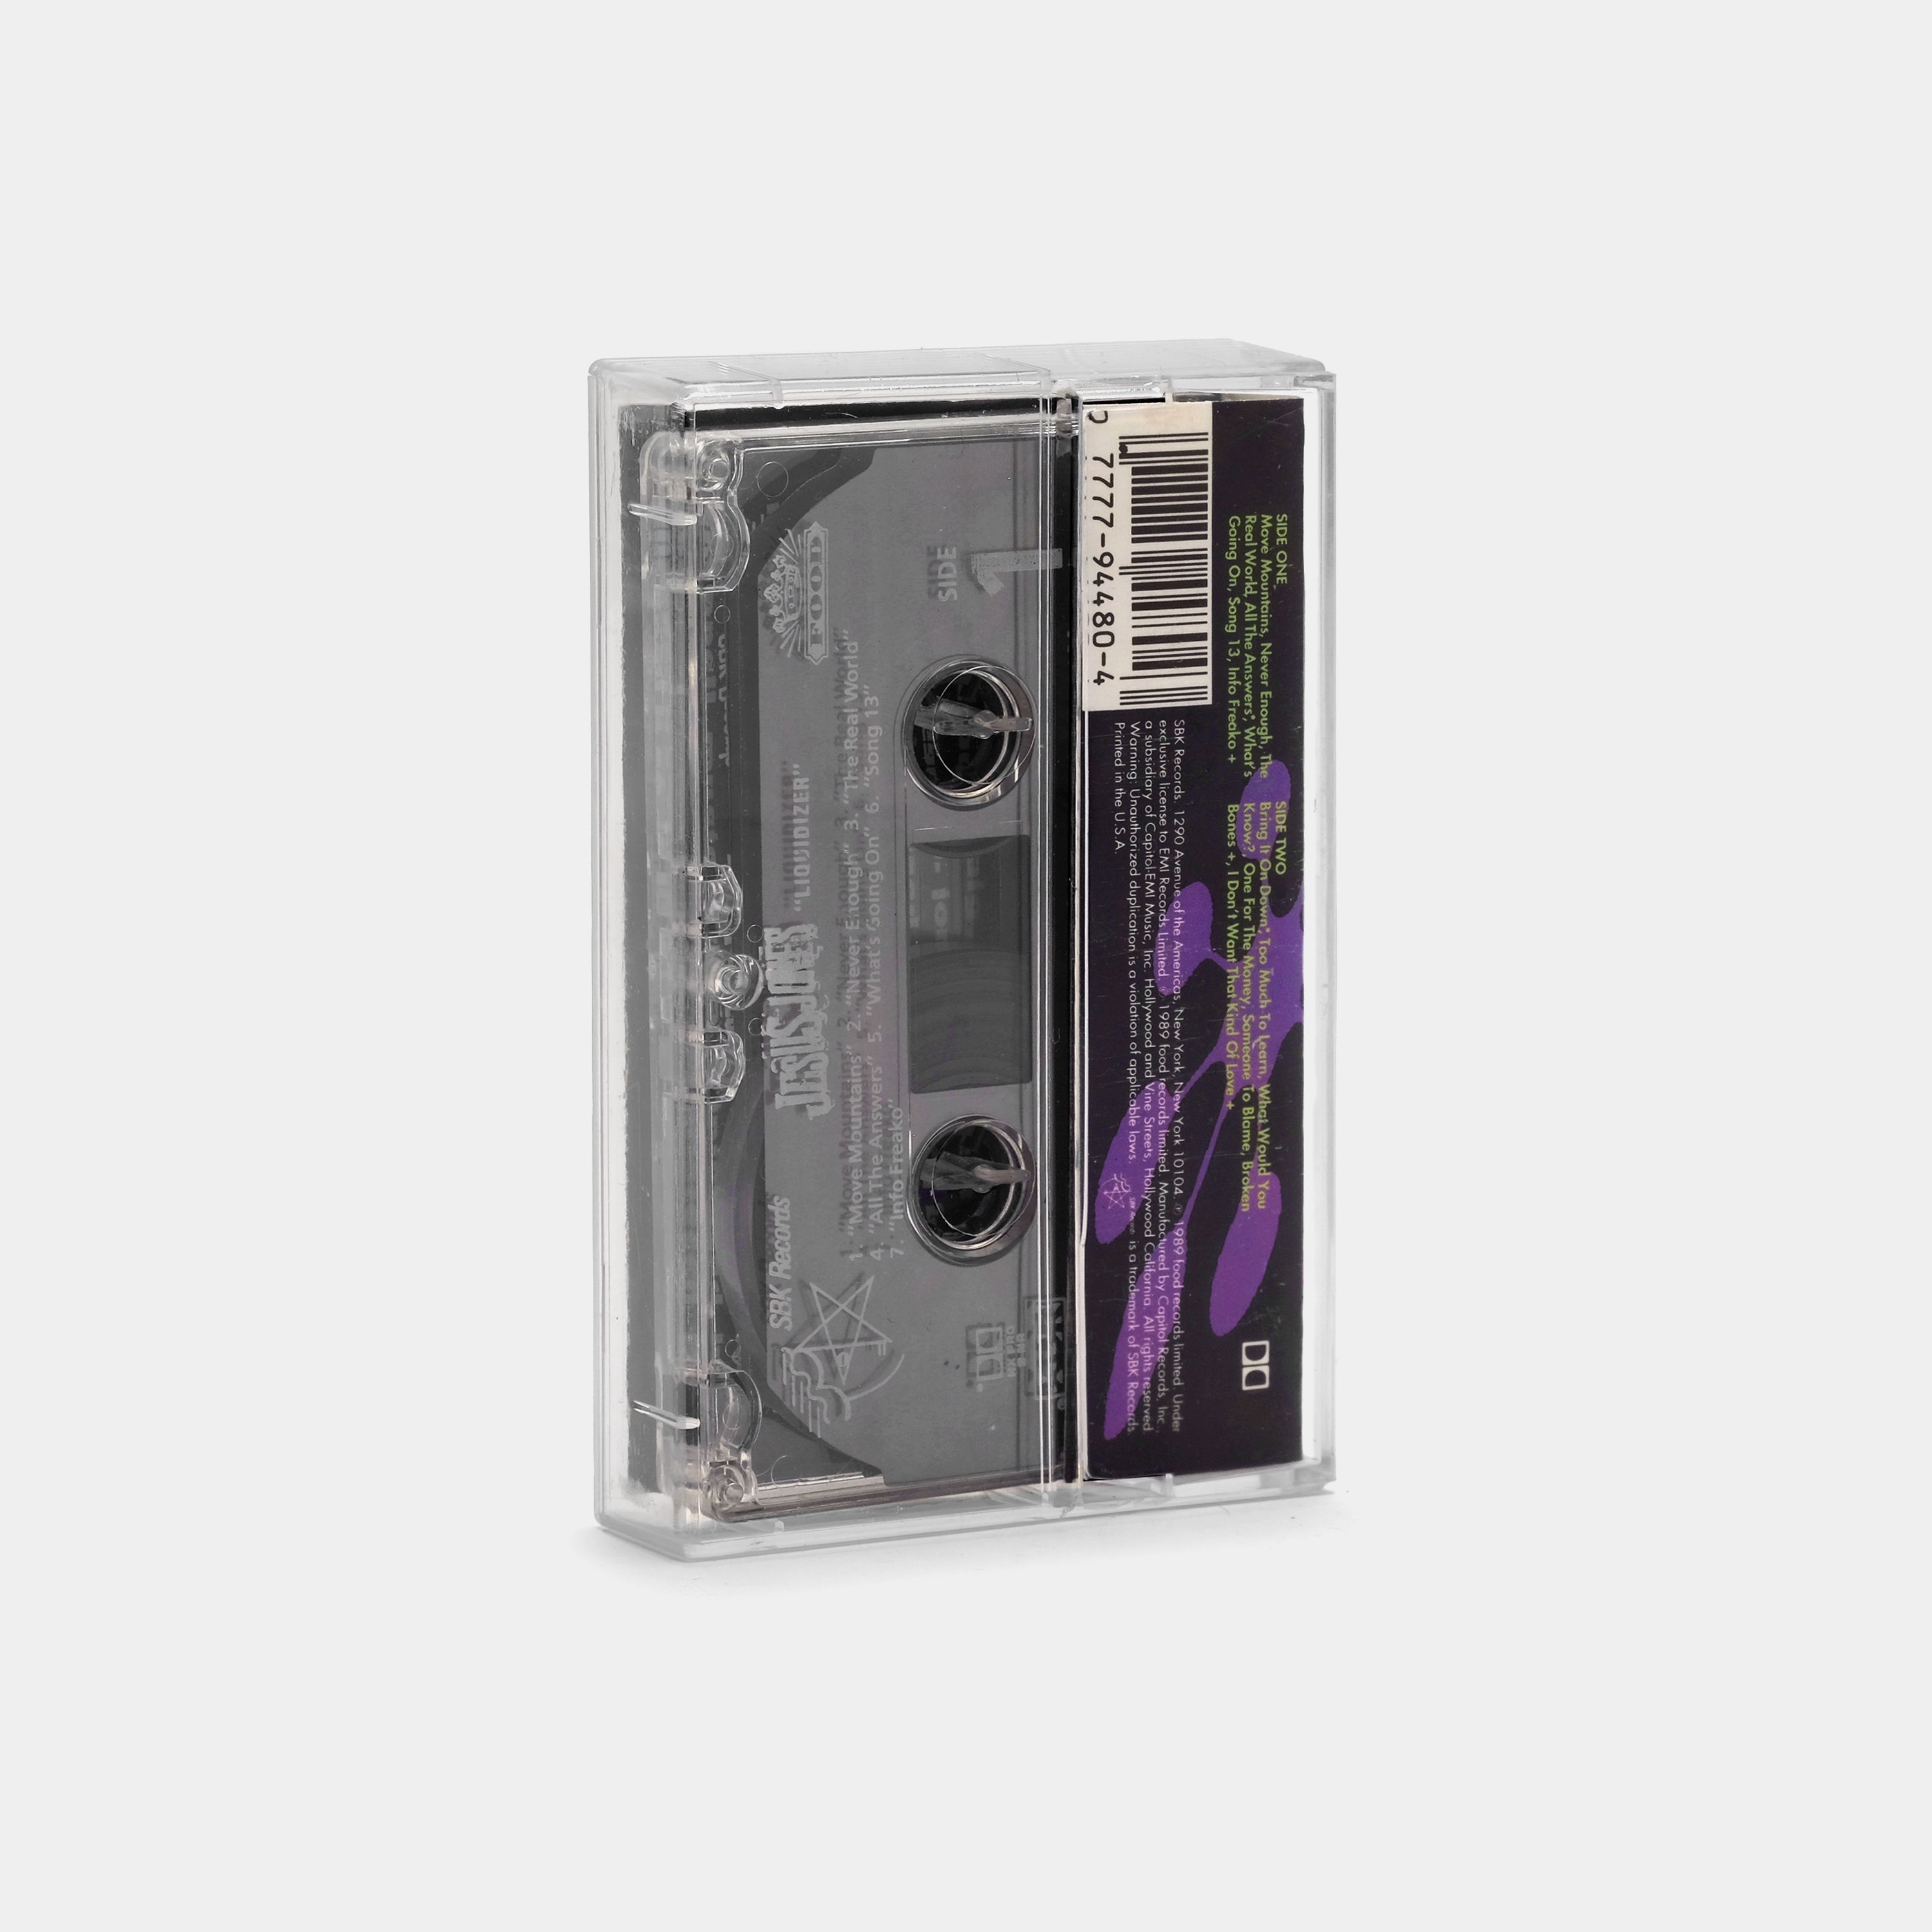 Jesus Jones - Liquidizer Cassette Tape